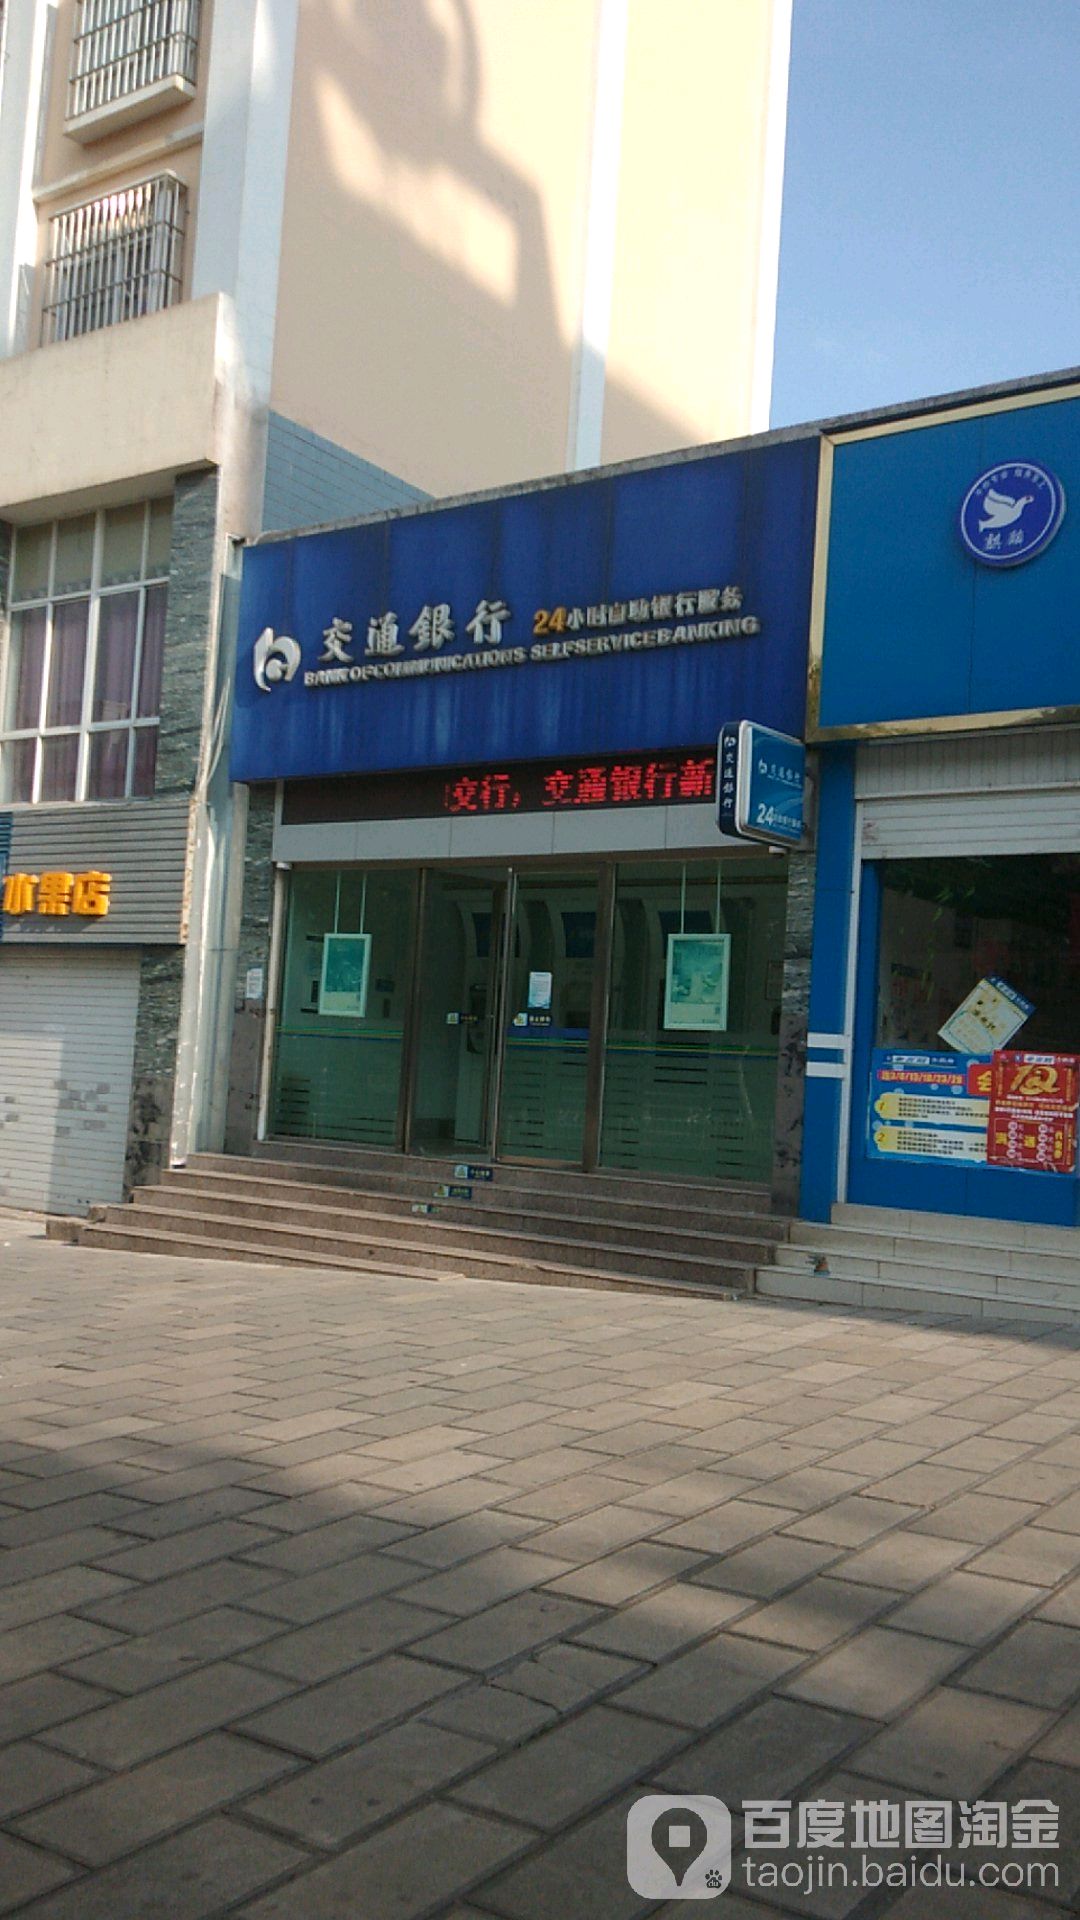 交通銀行24小時自助銀行服務(麒麟東路店)